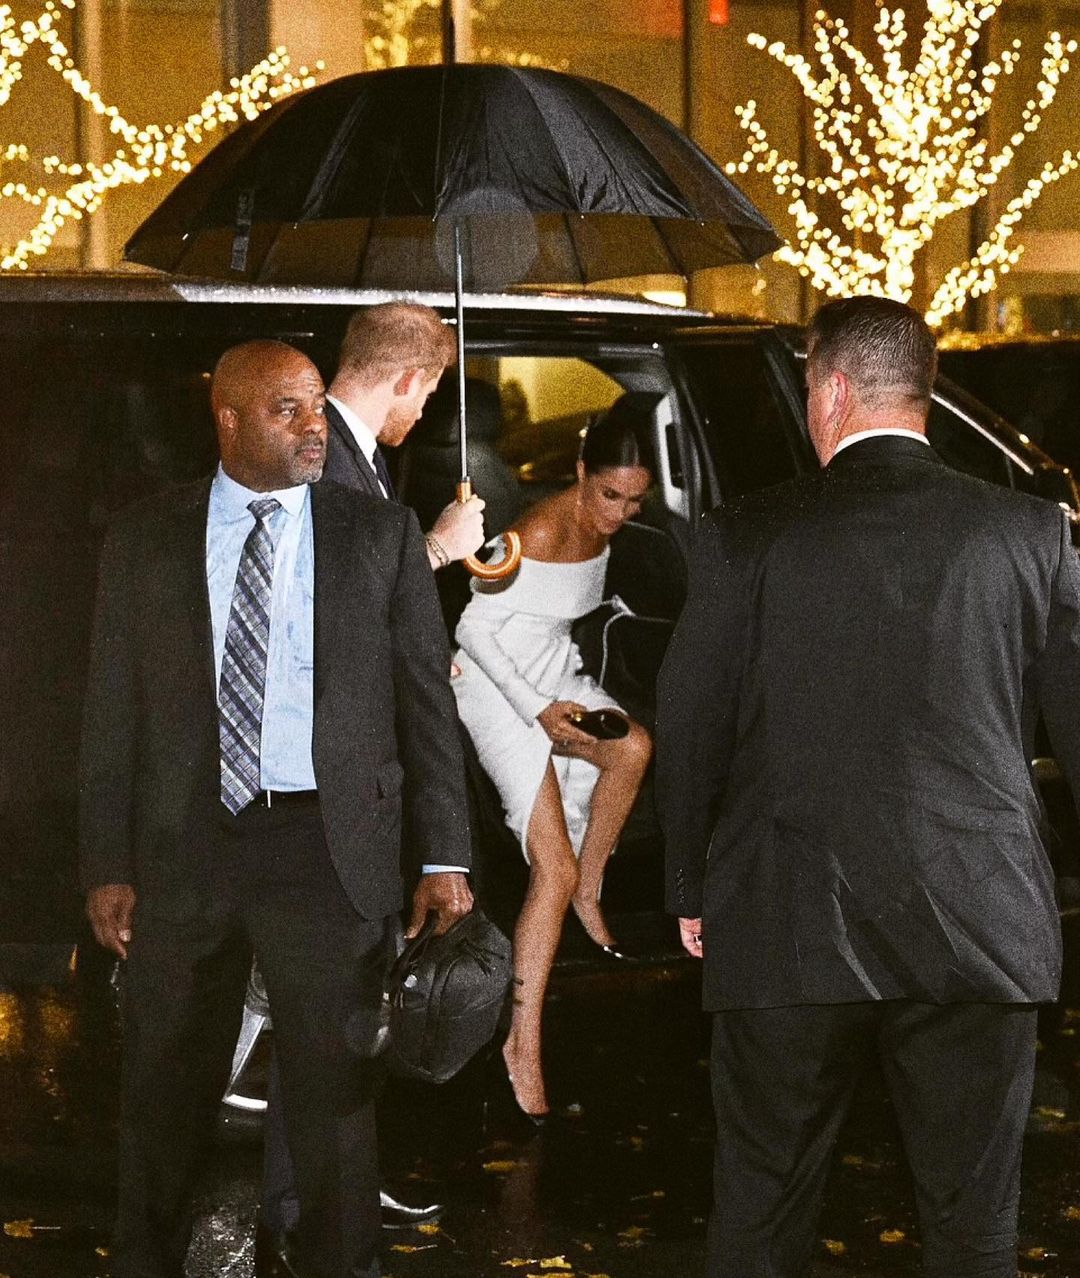 В белоснежном платье-коконе: Меган Маркл вышла в наряде, который поможет скрыть недостатки в области живота